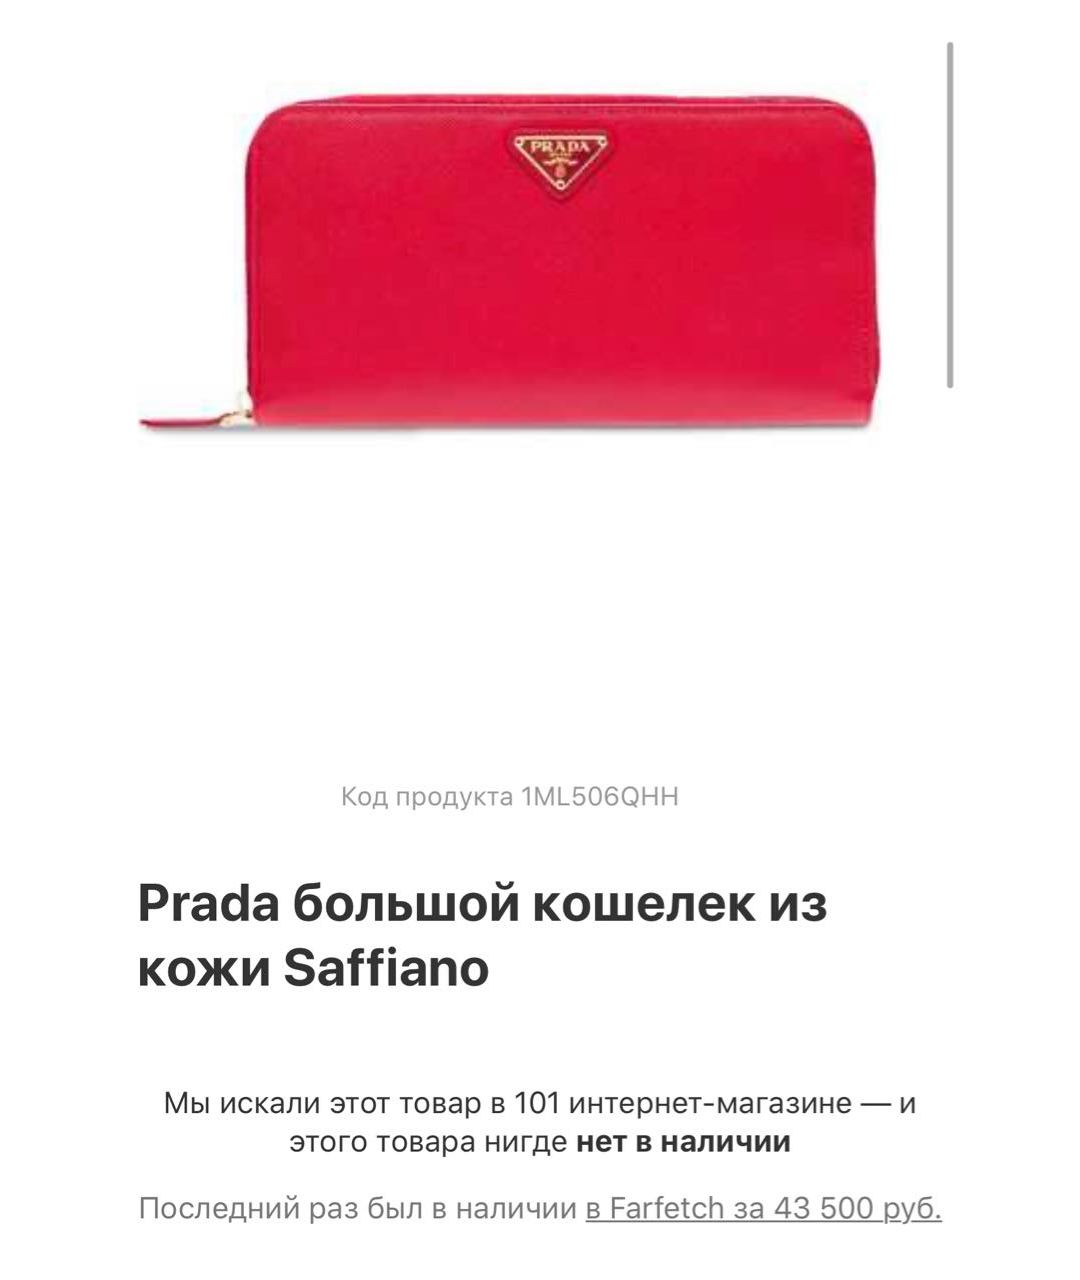 PRADA Красный кожаный кошелек, фото 2